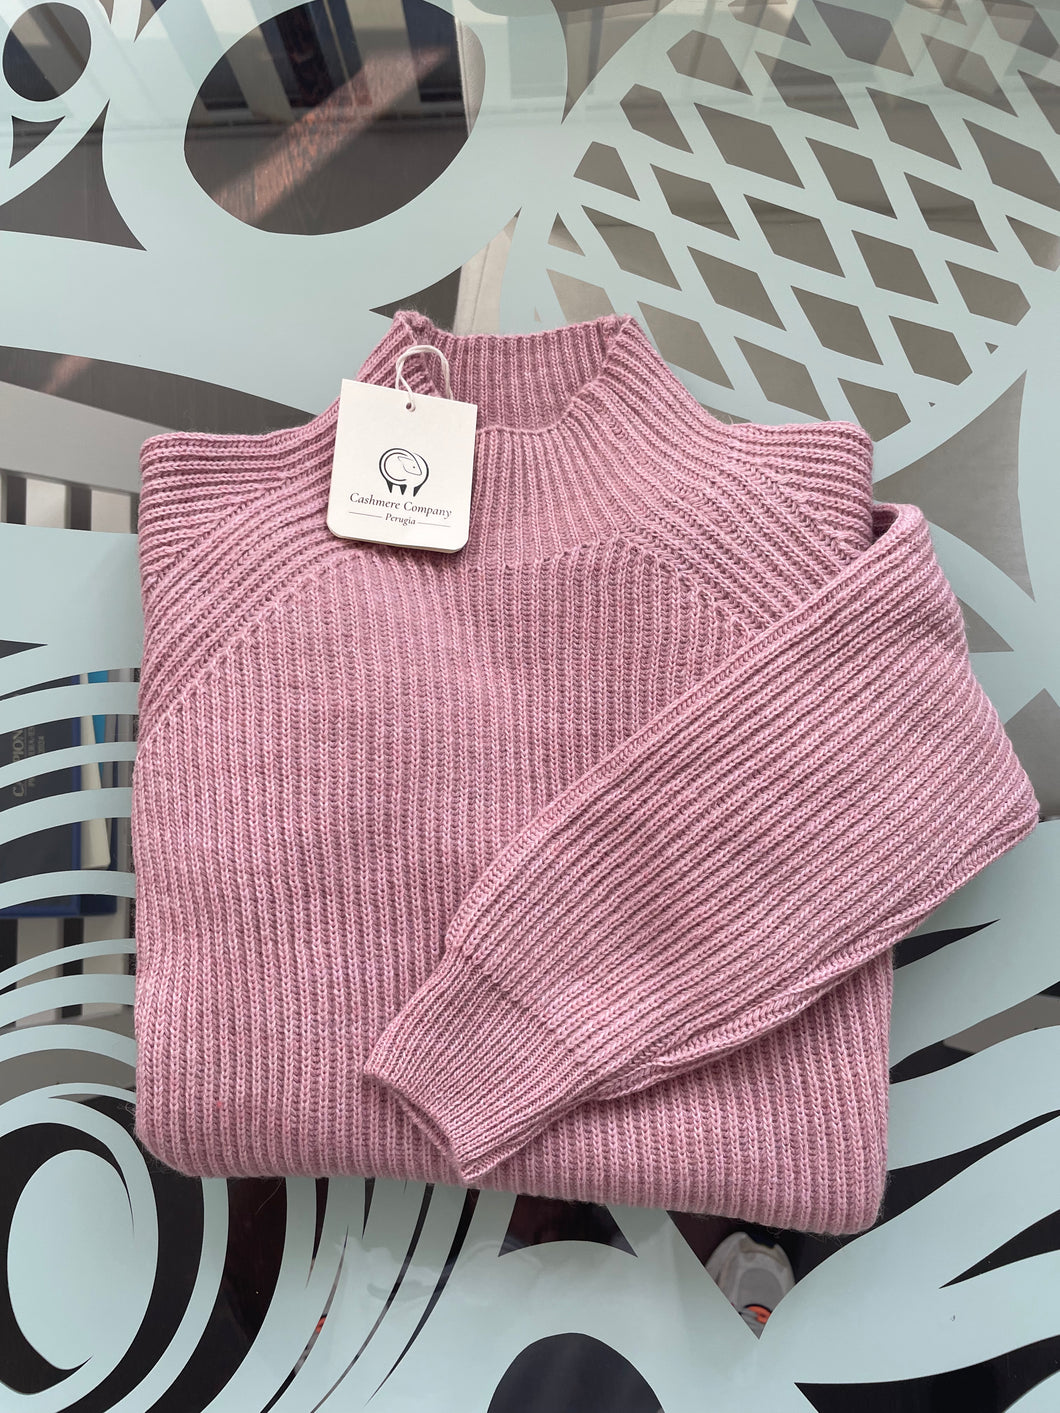 Cashmere Company maglia donna lana e alpaca rosa  dolcevita Costa Inglese Made in Italy